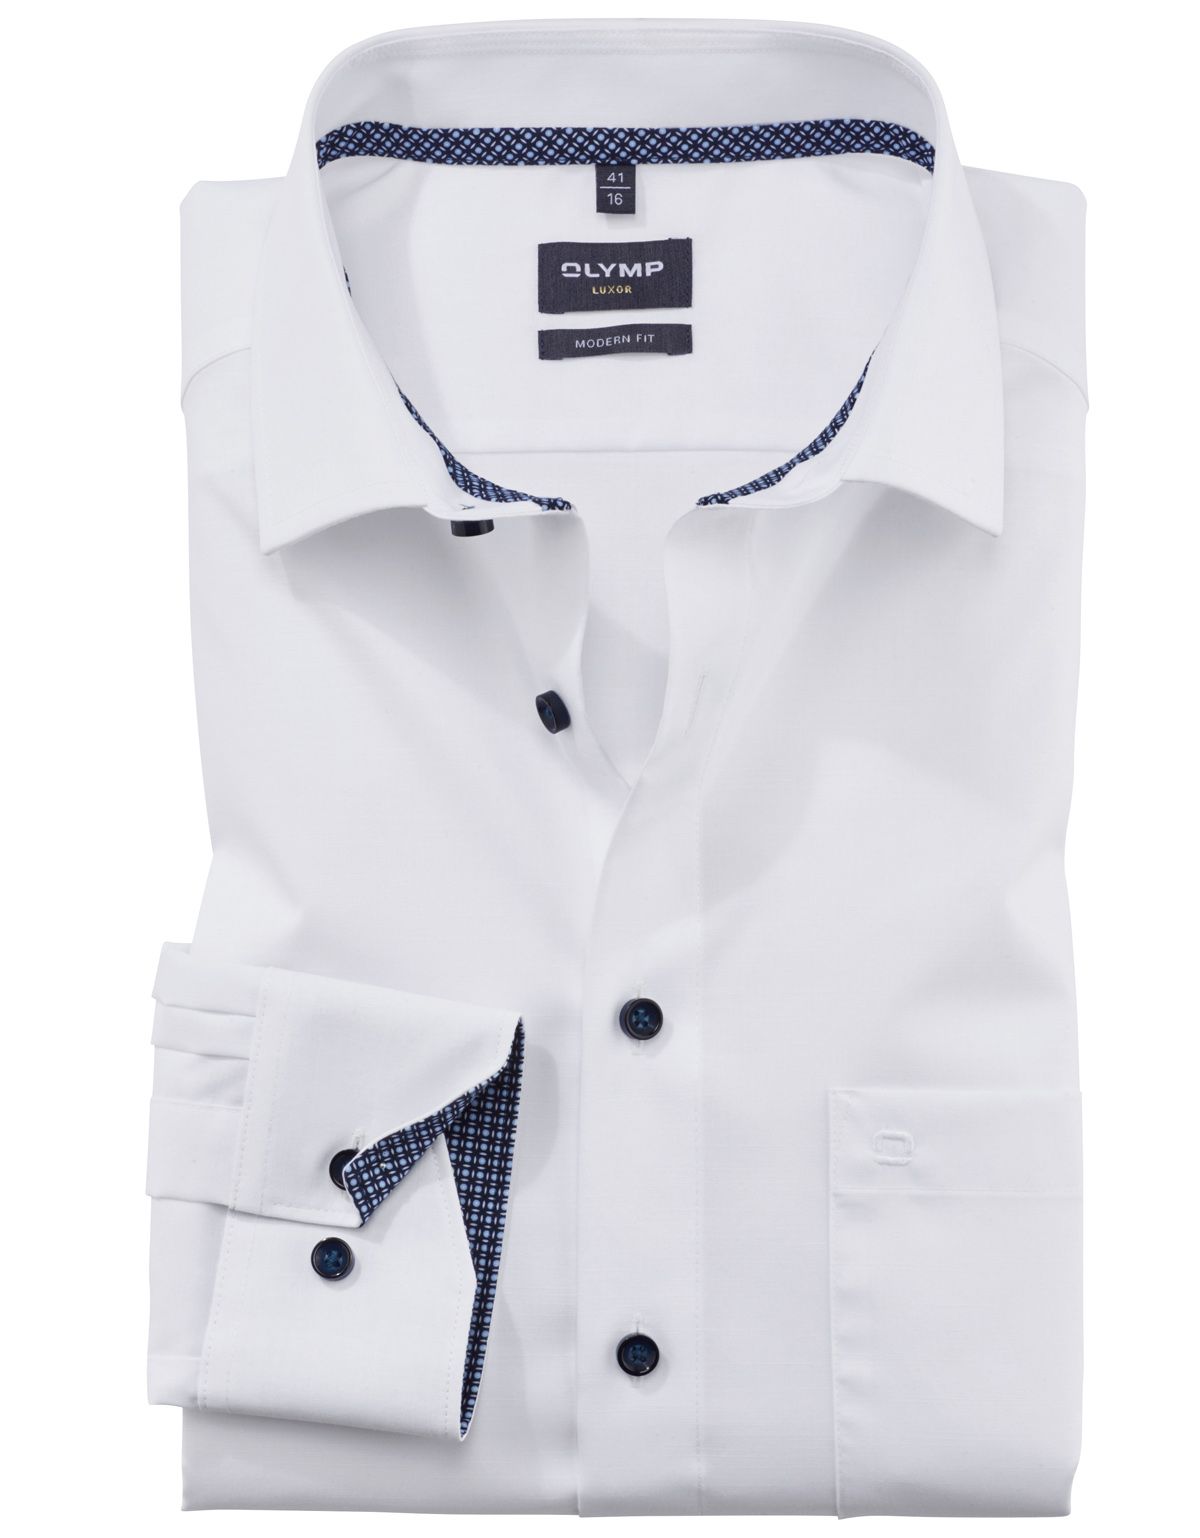 Рубашка классическая мужская OLYMP Luxor, modern fit на высокий рост[БЕЛЫЙ]